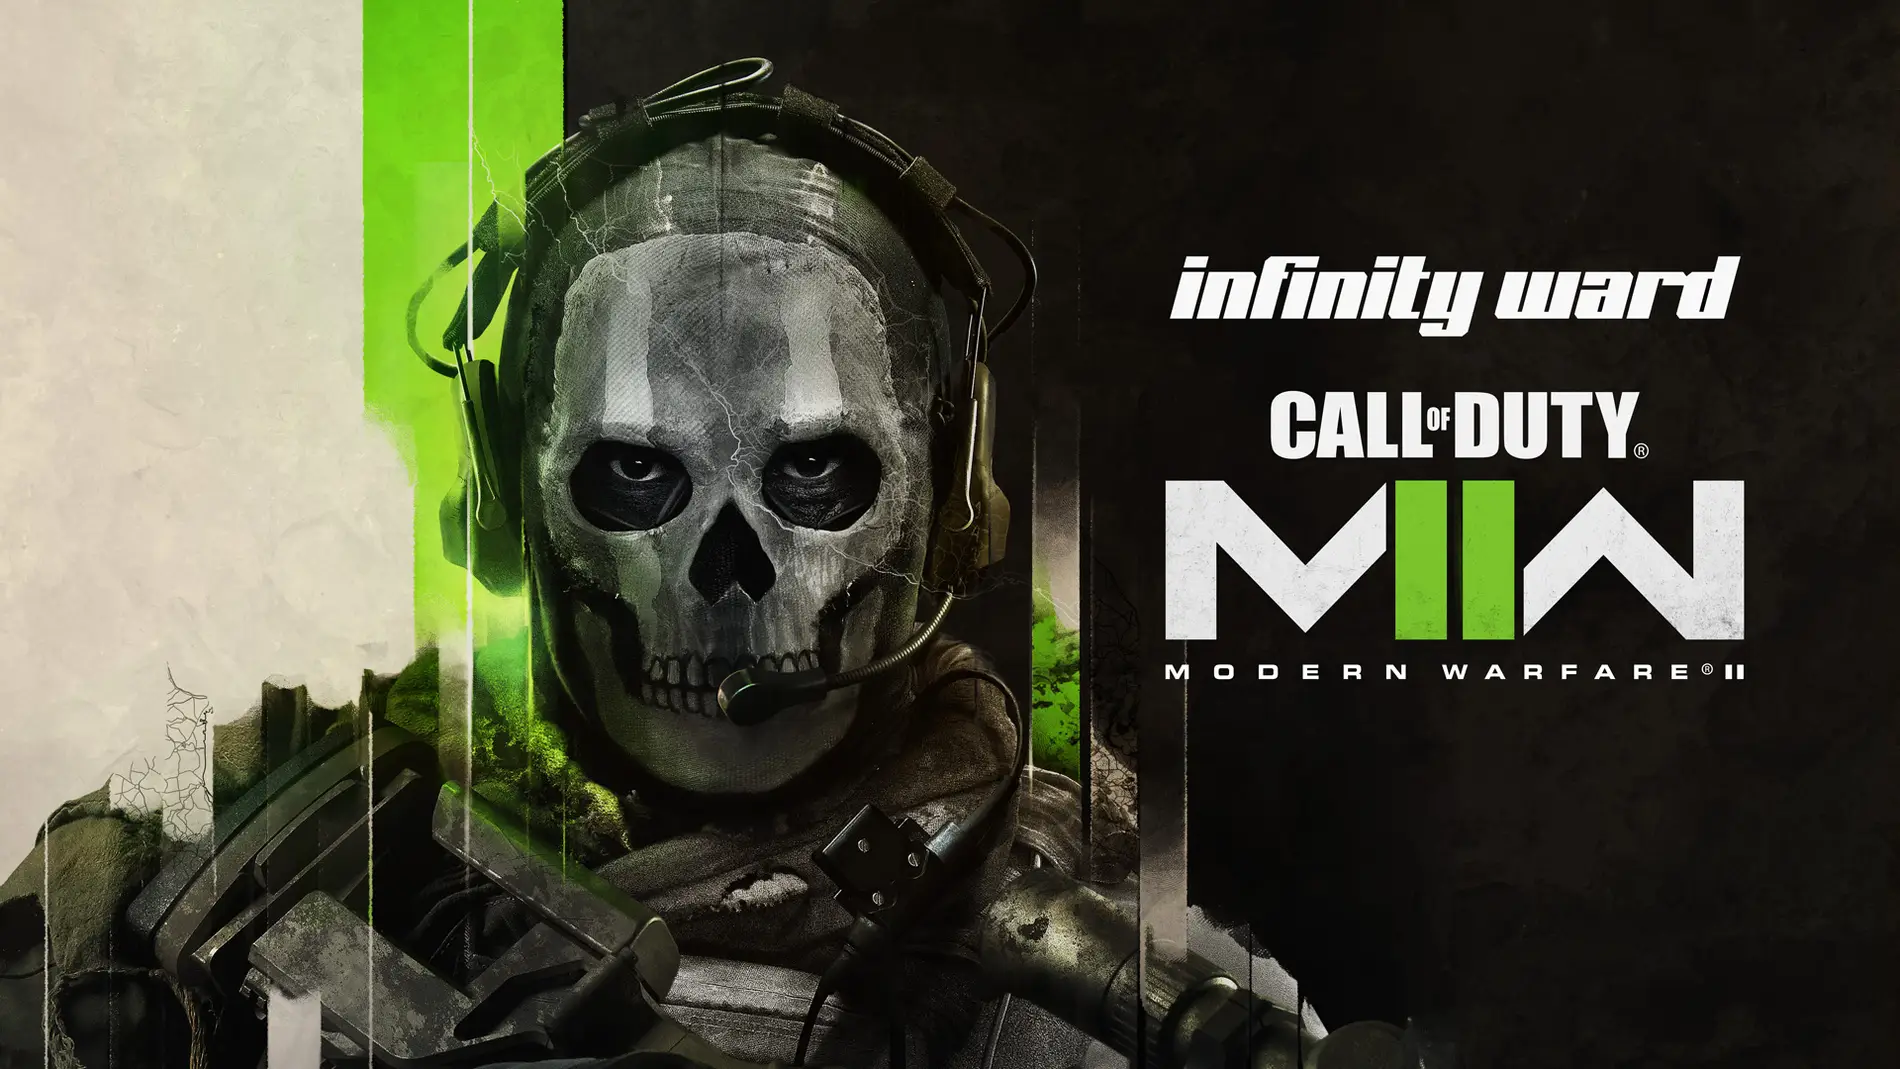 Requisitos en PC de Call of Duty: Modern Warfare III ya publicados